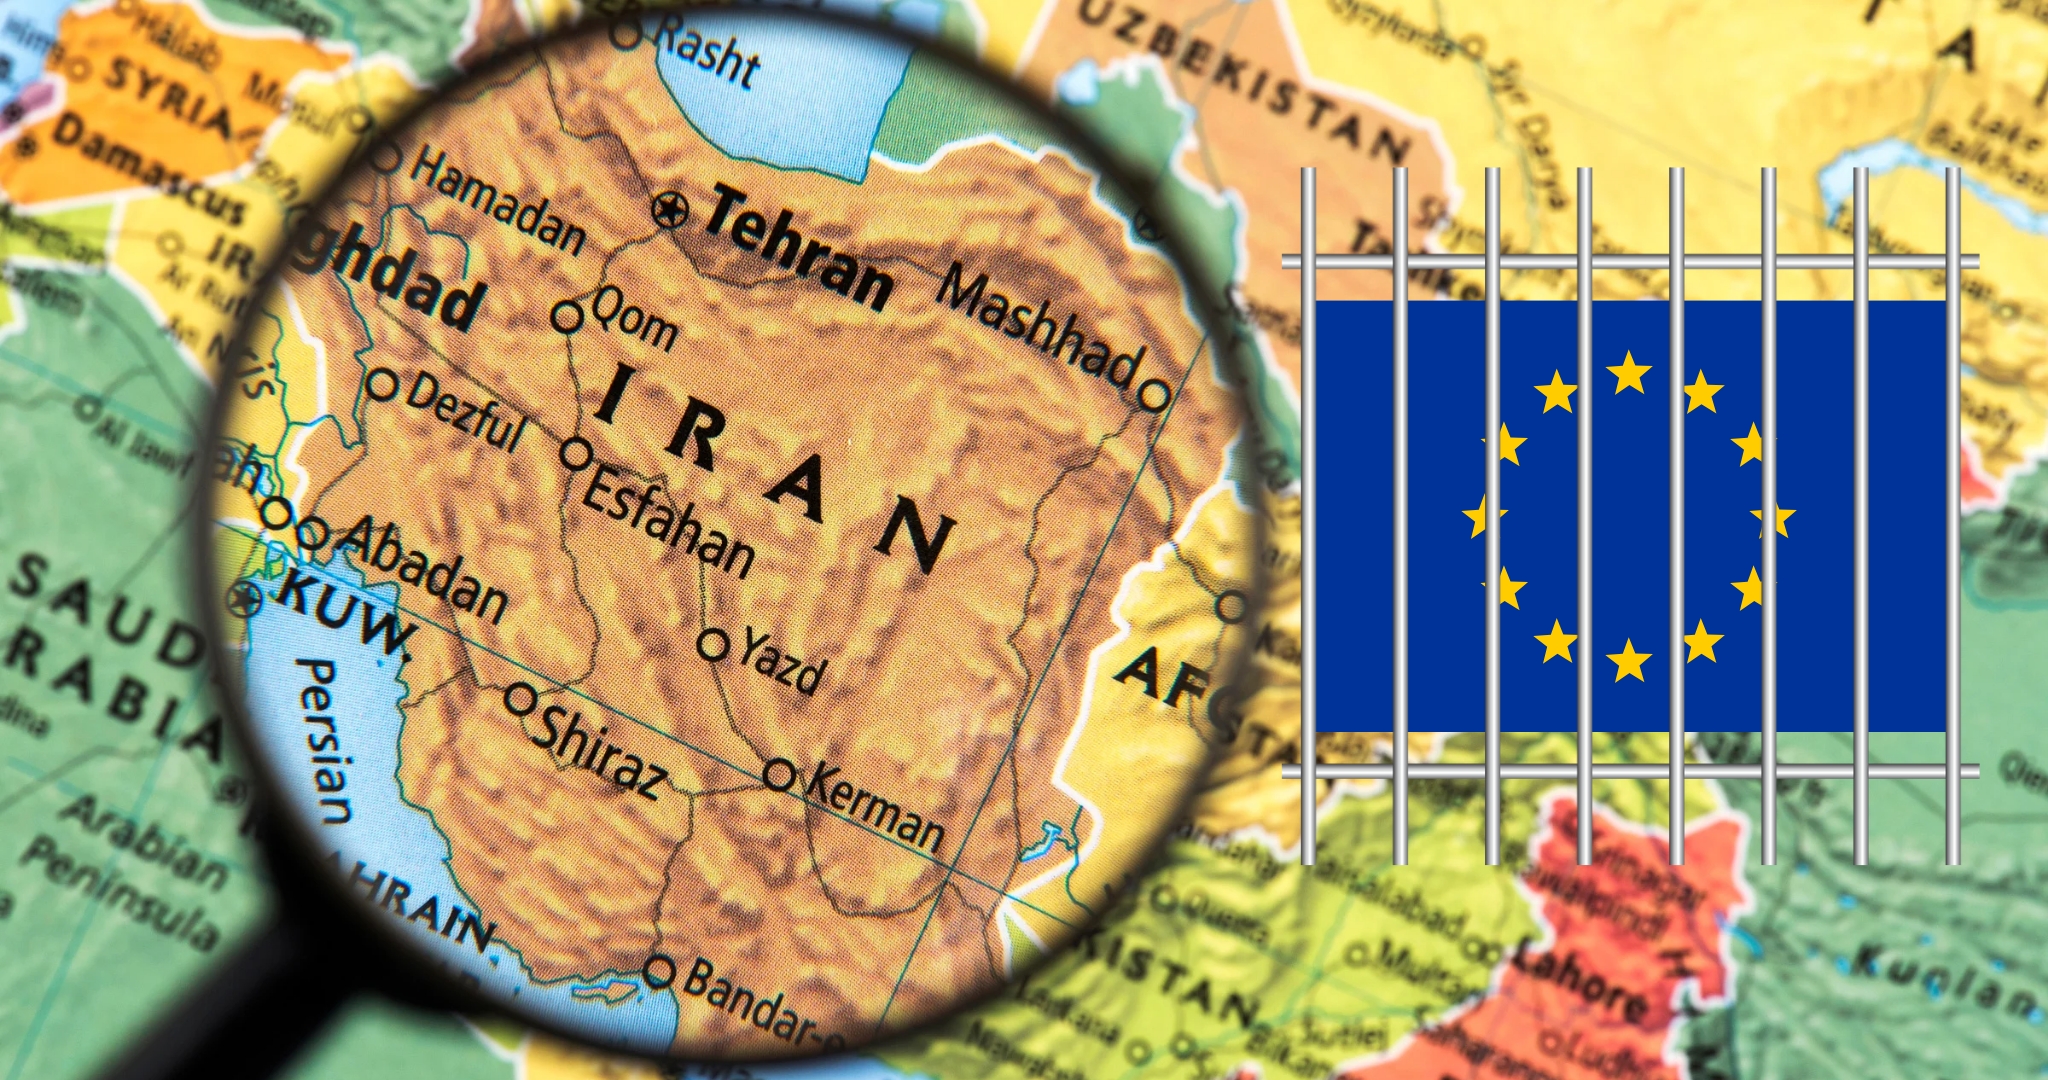 Schwedischer Diplomat in Iran in Geiselhaft Simbolbild